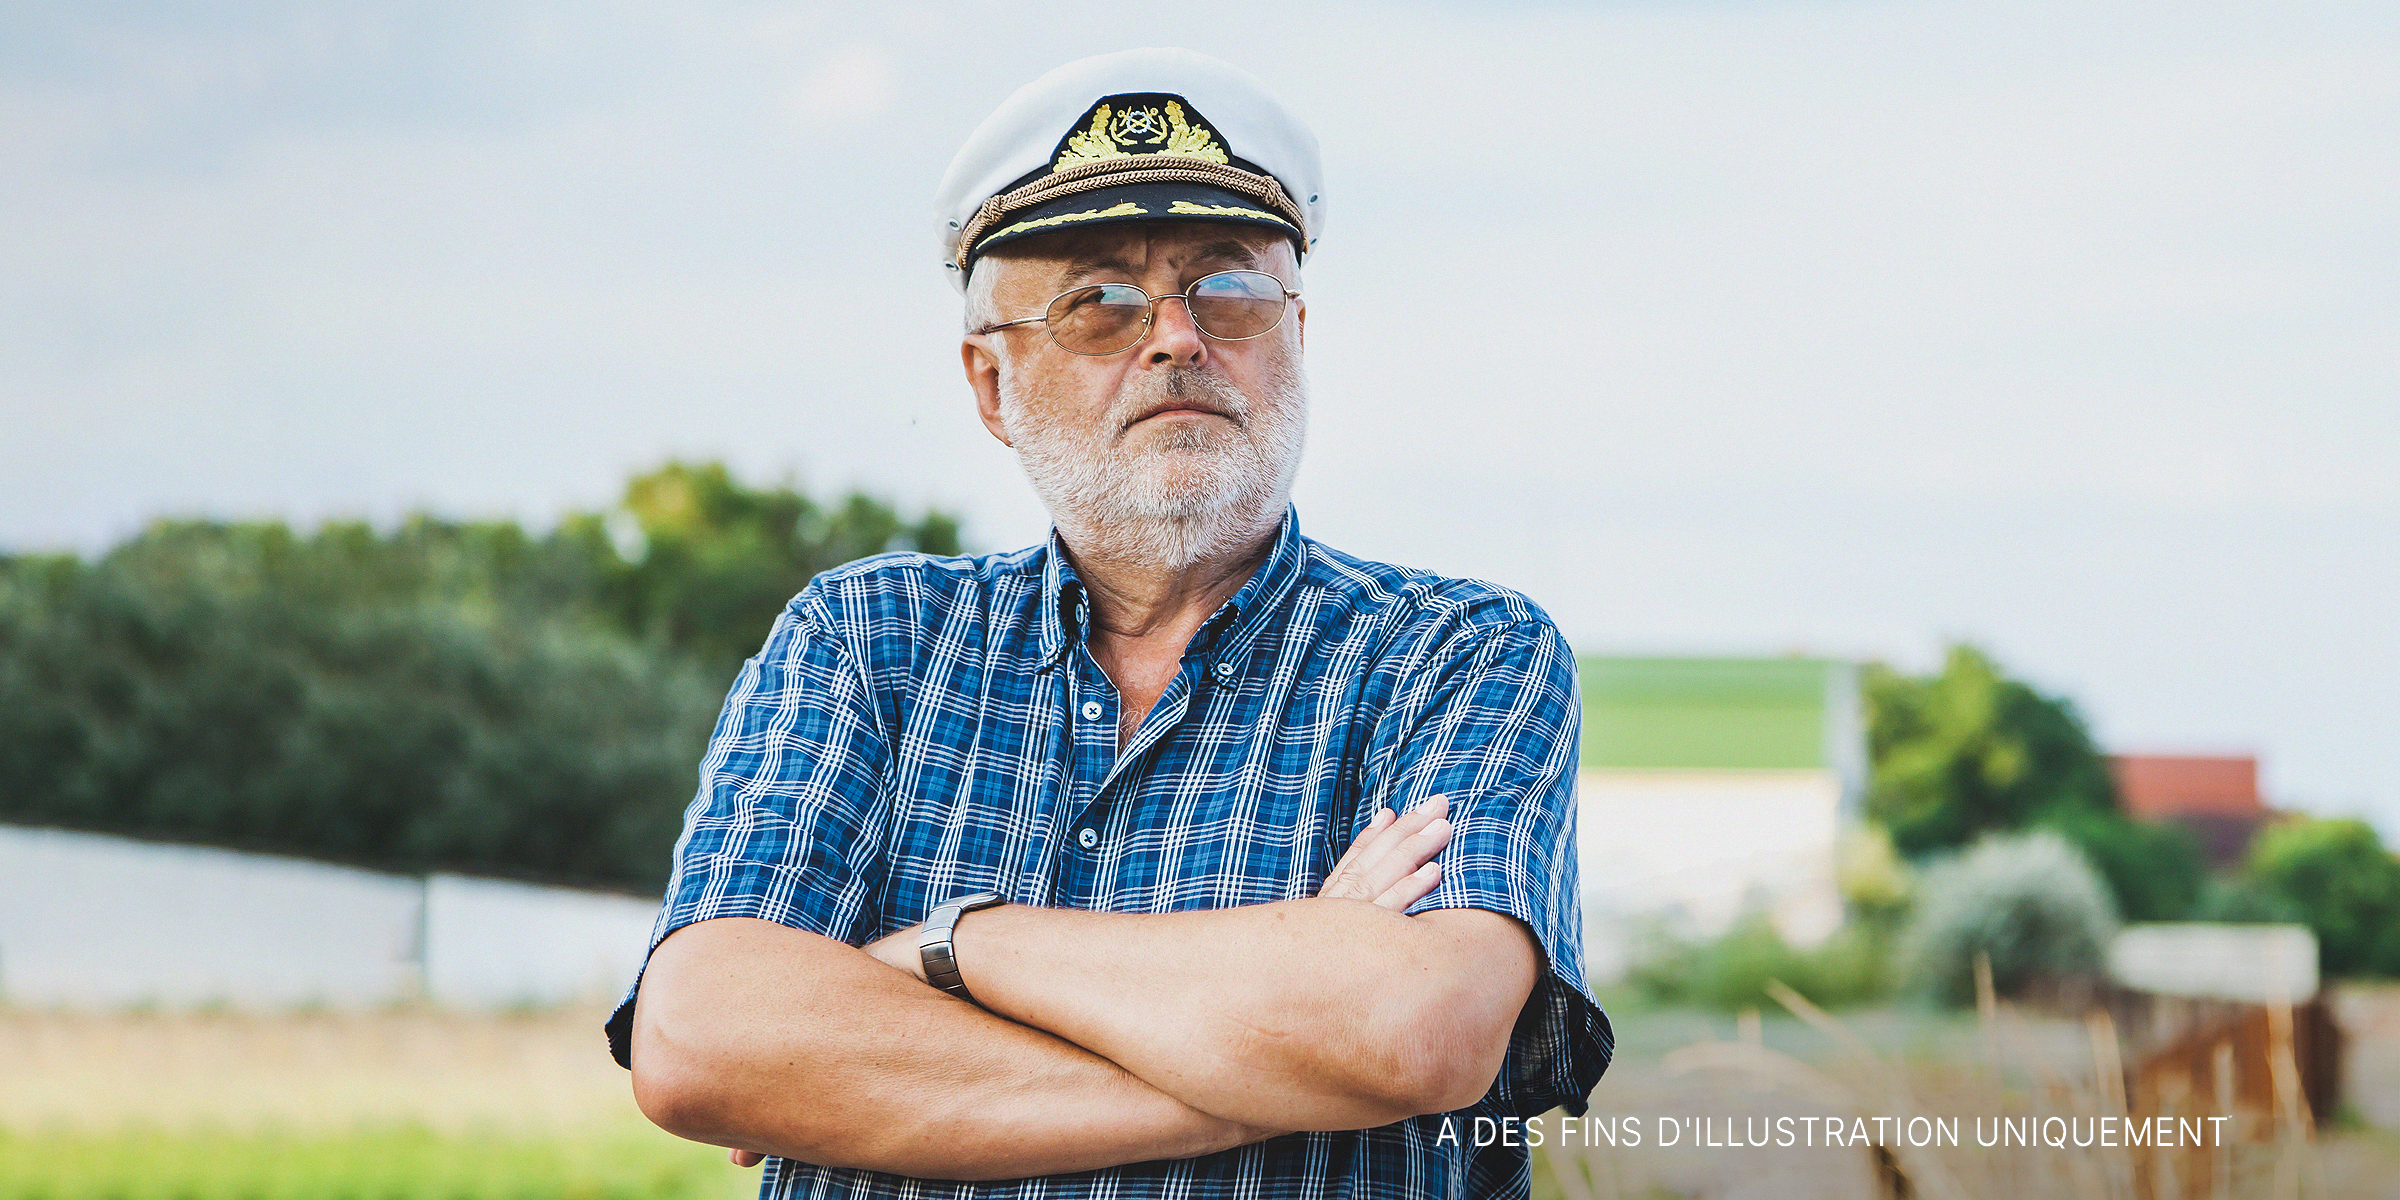 Un vieux mand avec un chapeau de capitaine | Source : Shutterstock